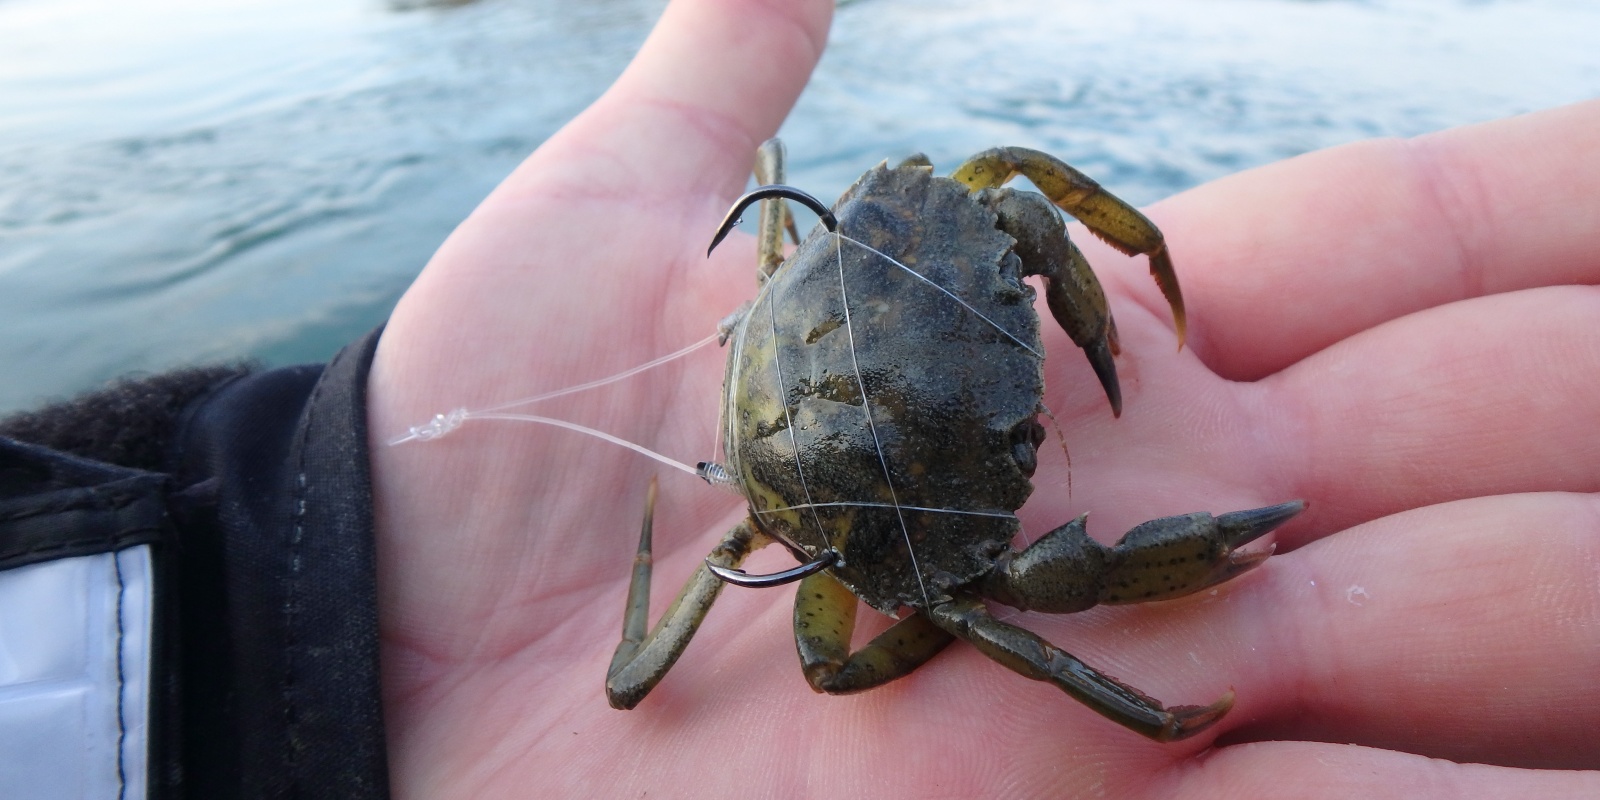 Quelques tours d'elastique à ligaturer permet d'optimiser la tenue du crabe